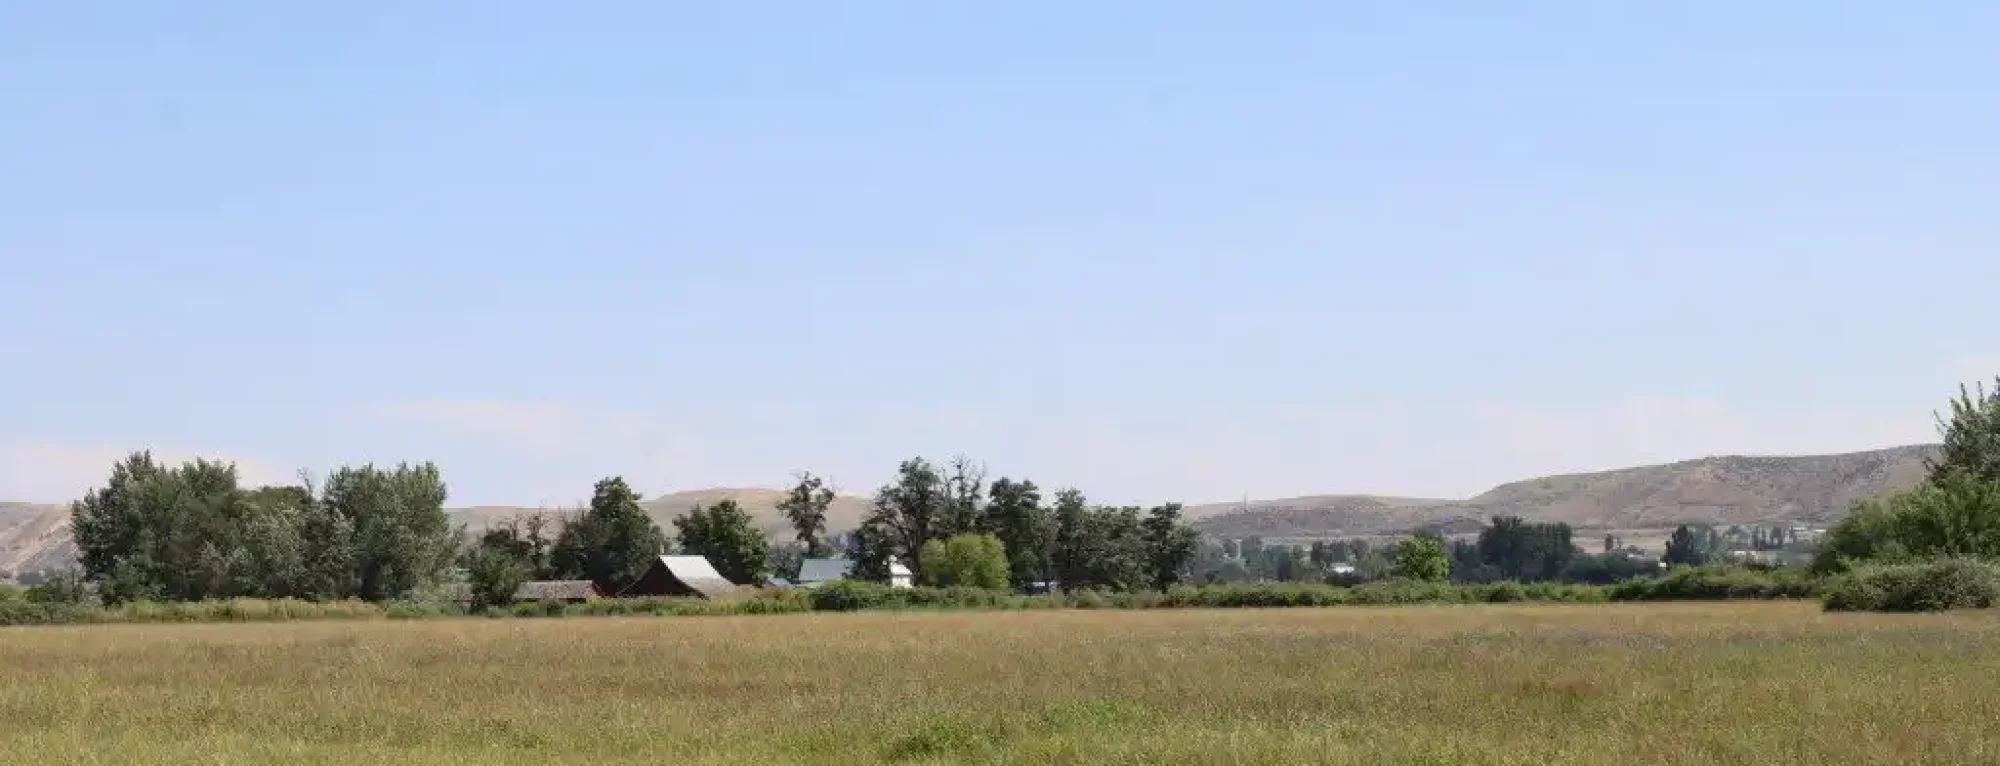 Emmett-Cattle-Ranch-Homesite